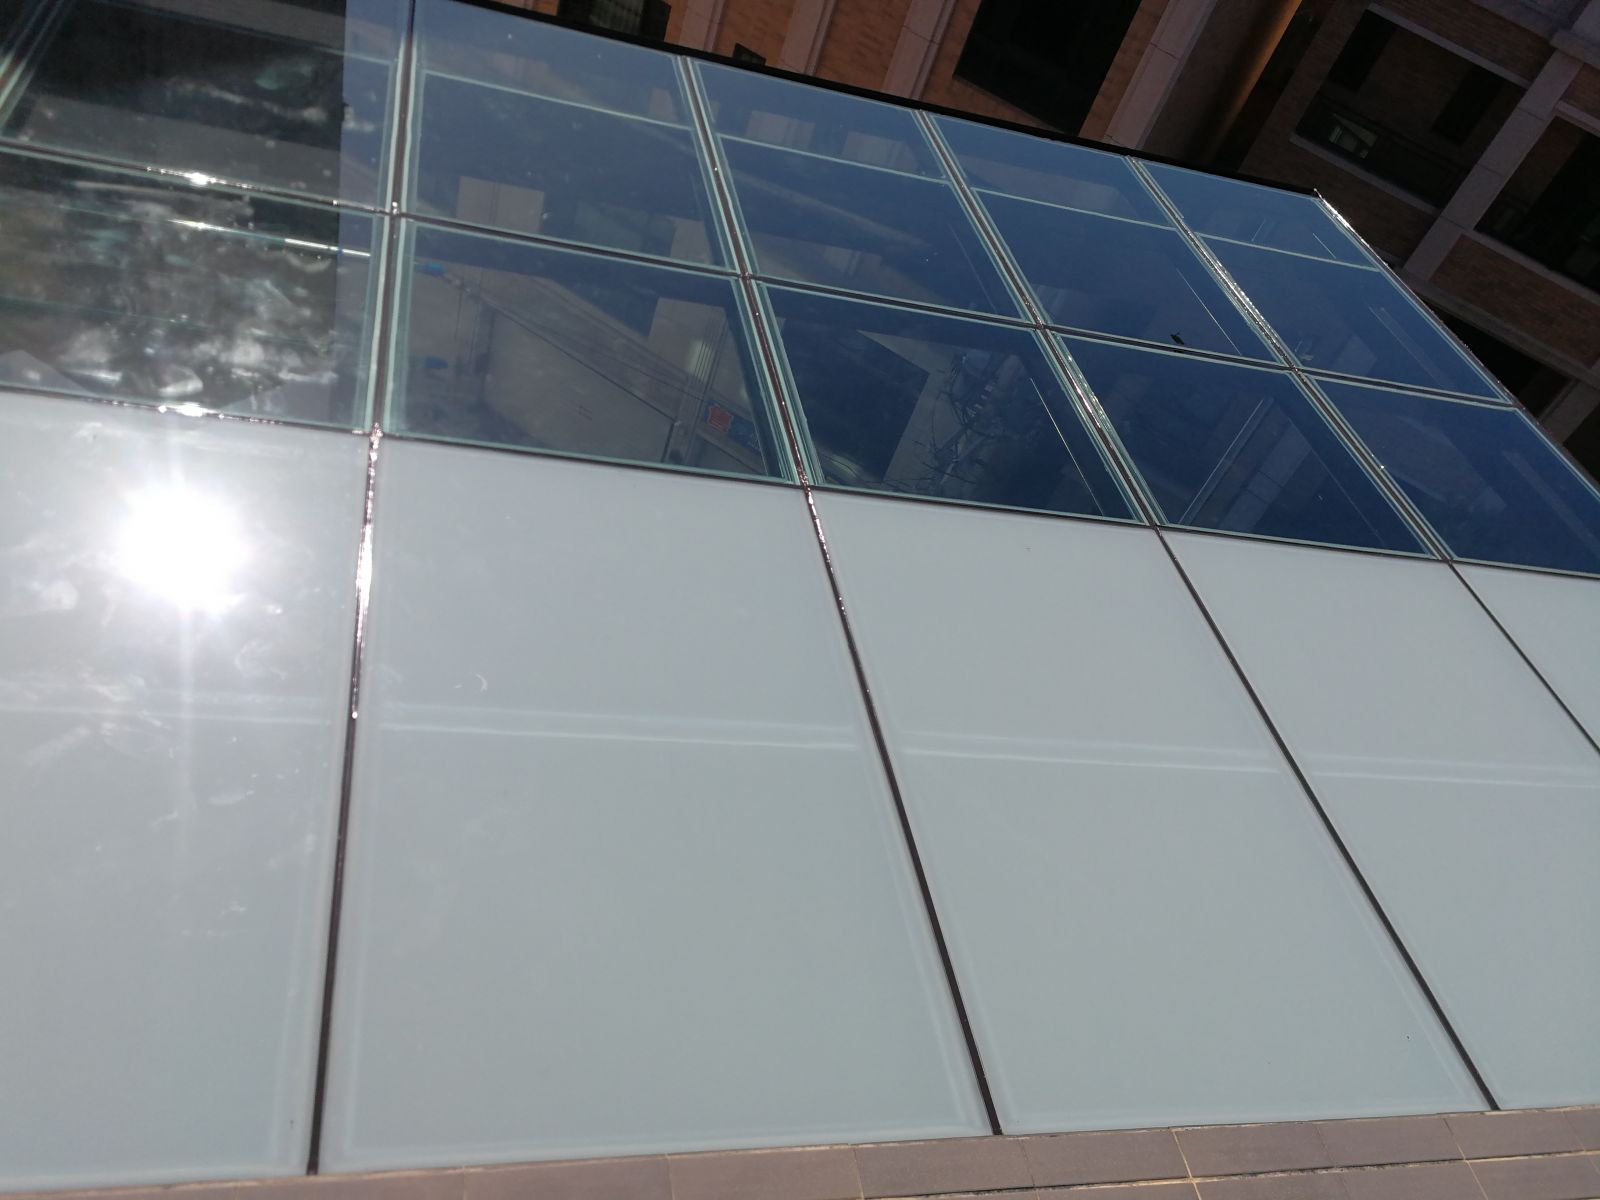 屋頂玻璃採用5+5白膜膠合玻璃搭配5光+5綠透明膠合玻璃